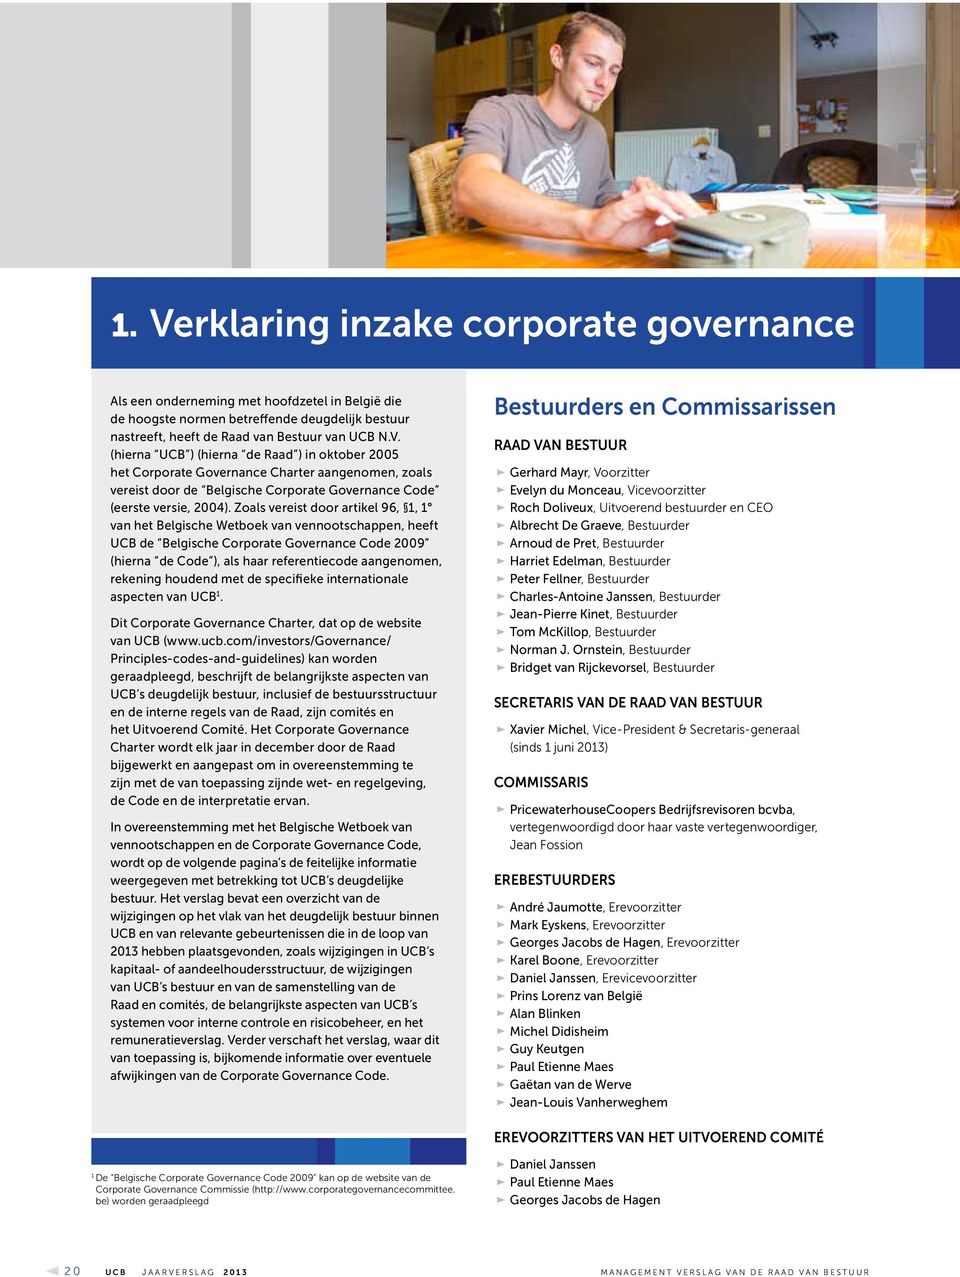 rekening houdend met de specifieke internationale aspecten van UCB 1. Dit Corporate Governance Charter, dat op de website van UCB (www.ucb.